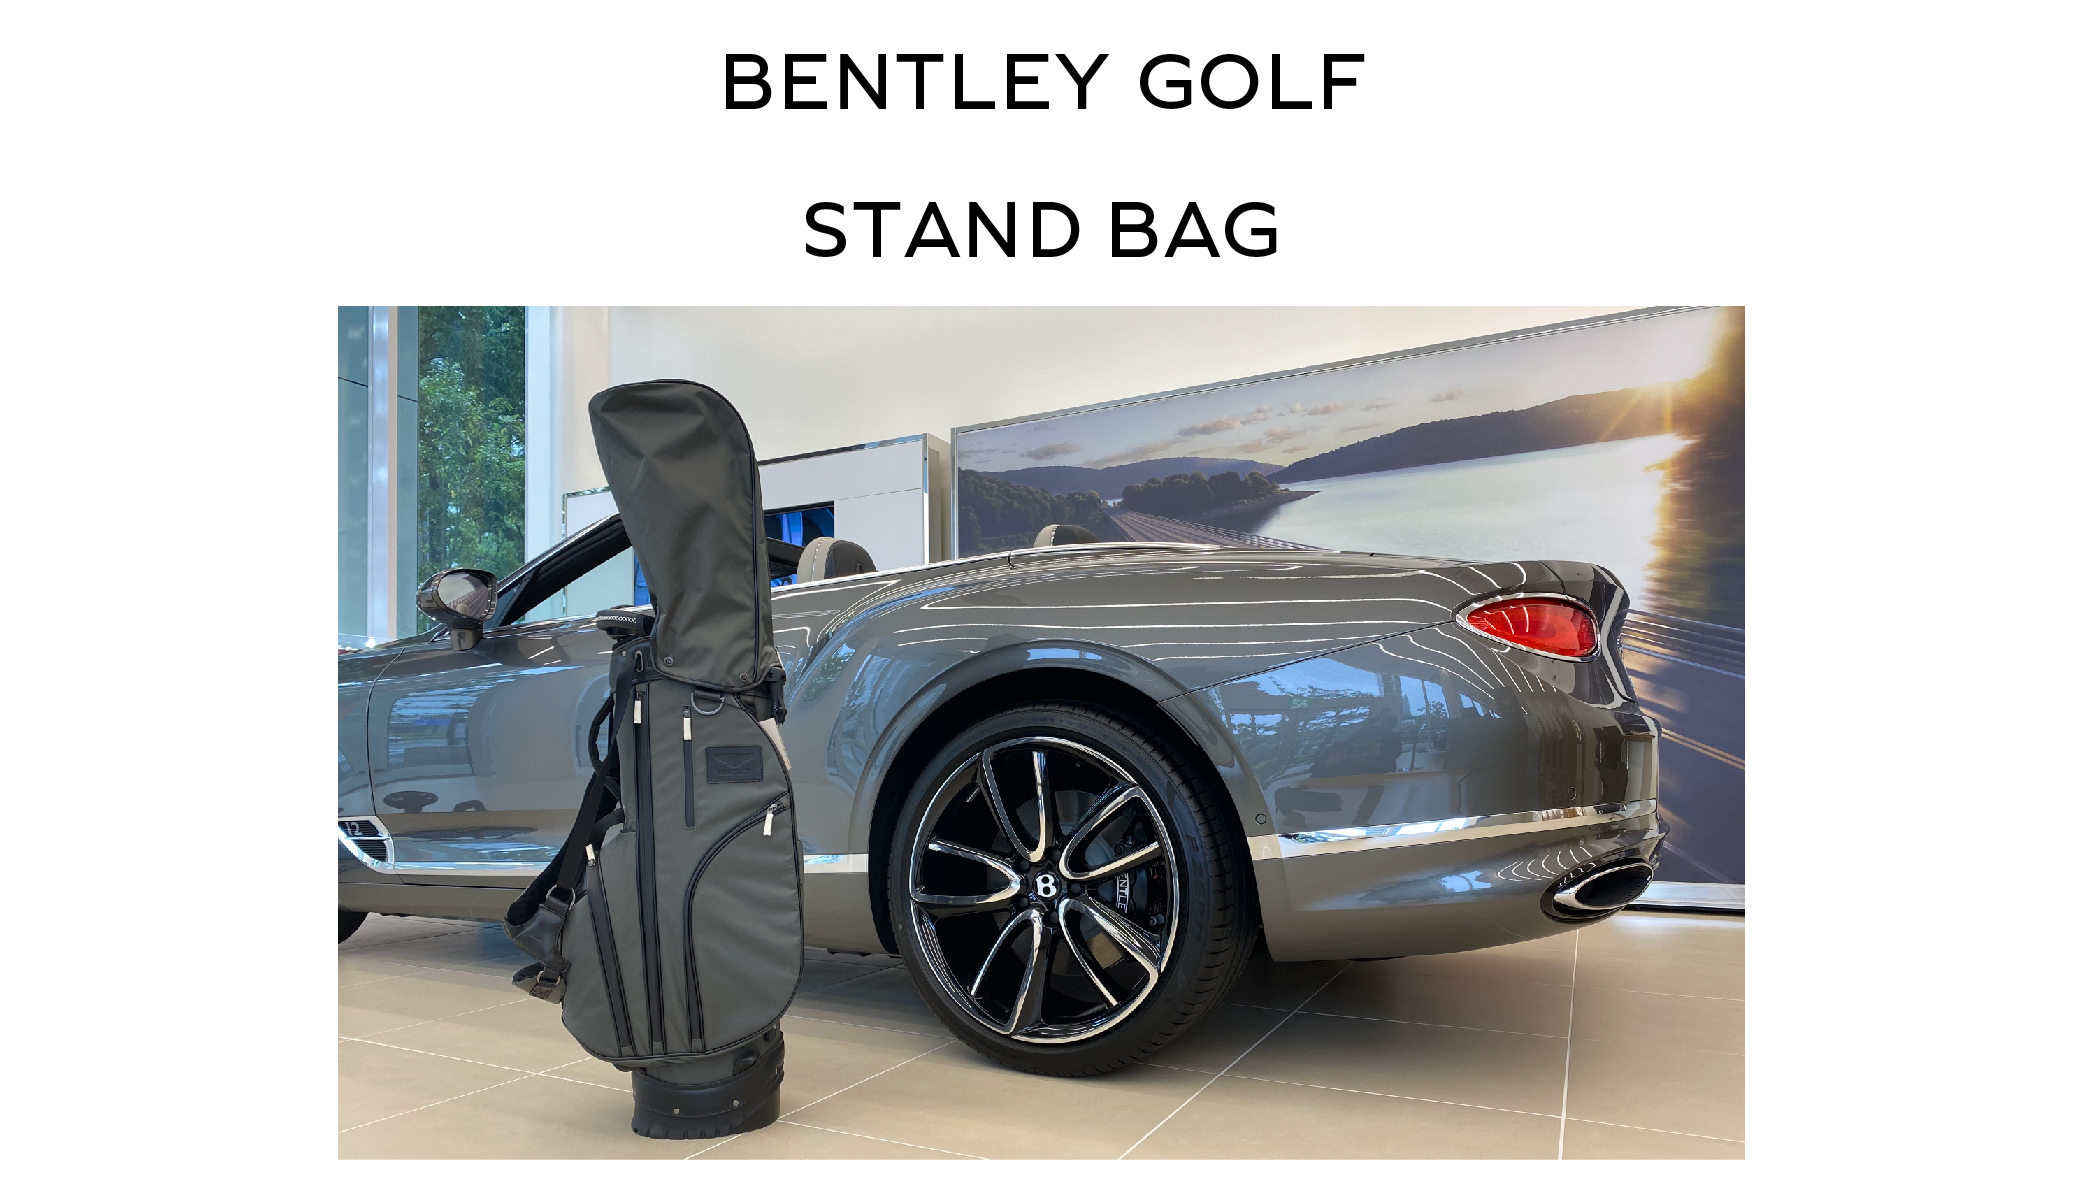 BENTLEY GOLF】ゴルフスタンドバッグのご案内 | SKY GROUP ベントレー